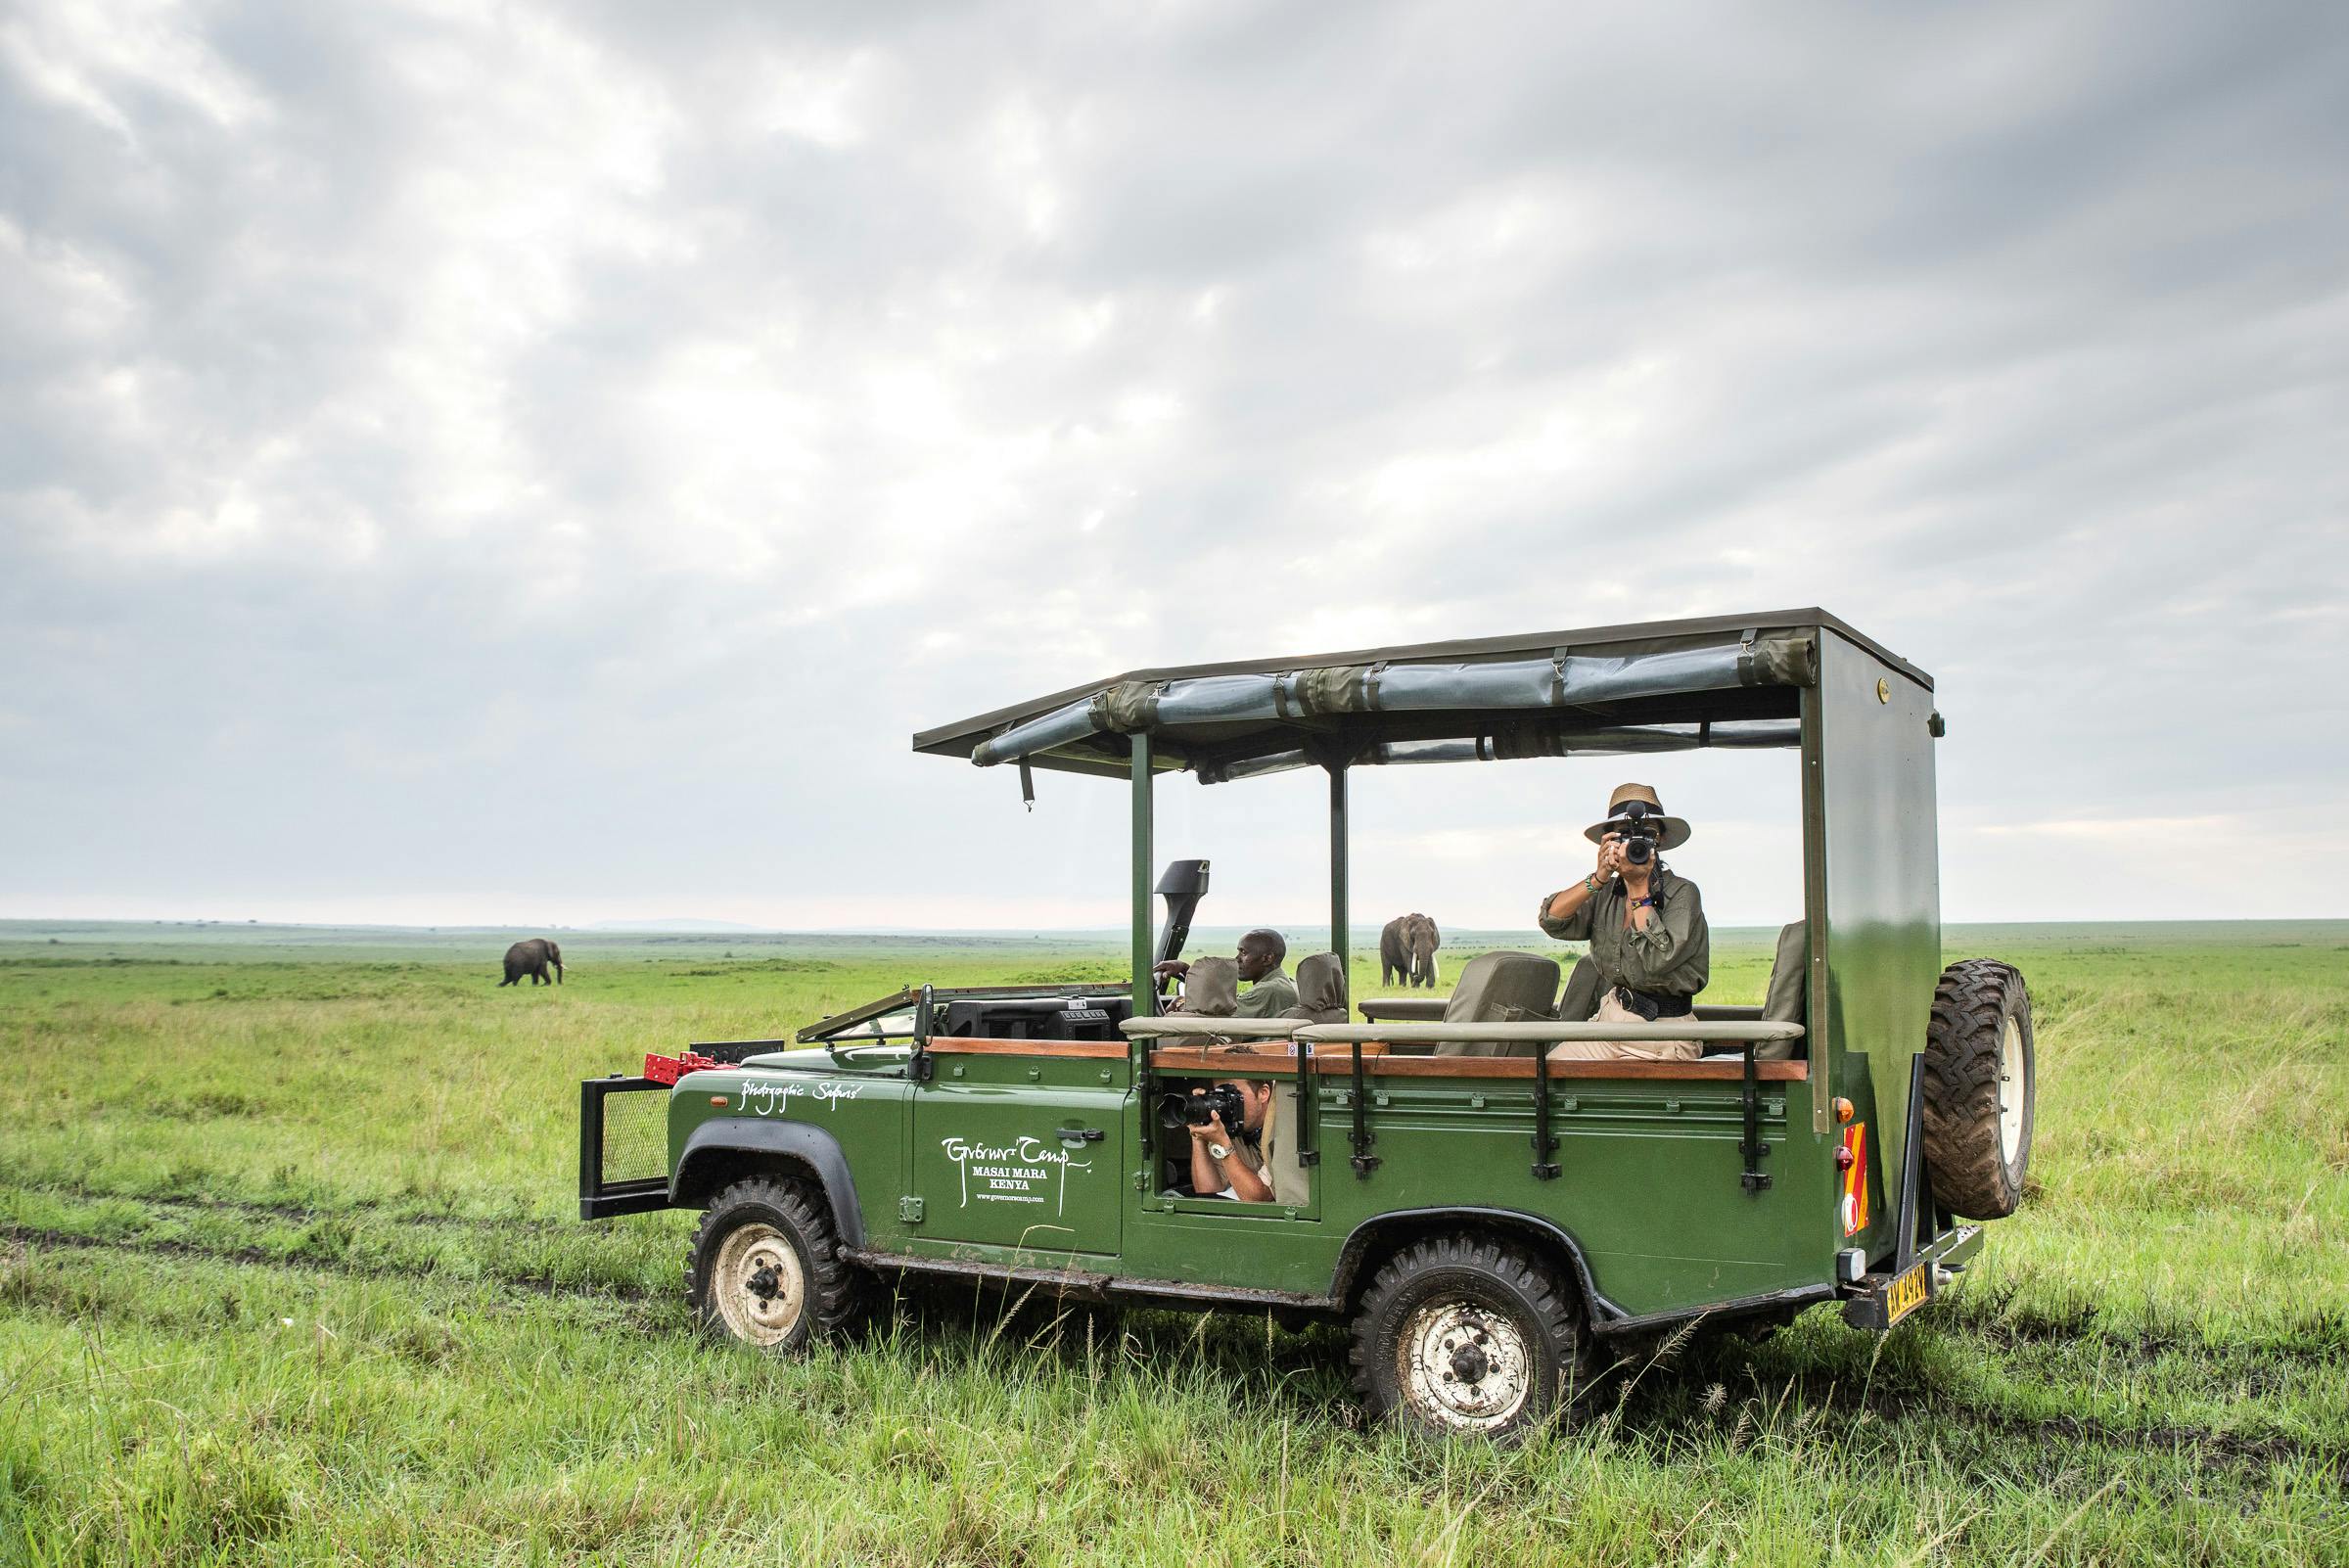 Masai Mara 2-day safari at Governors Camp